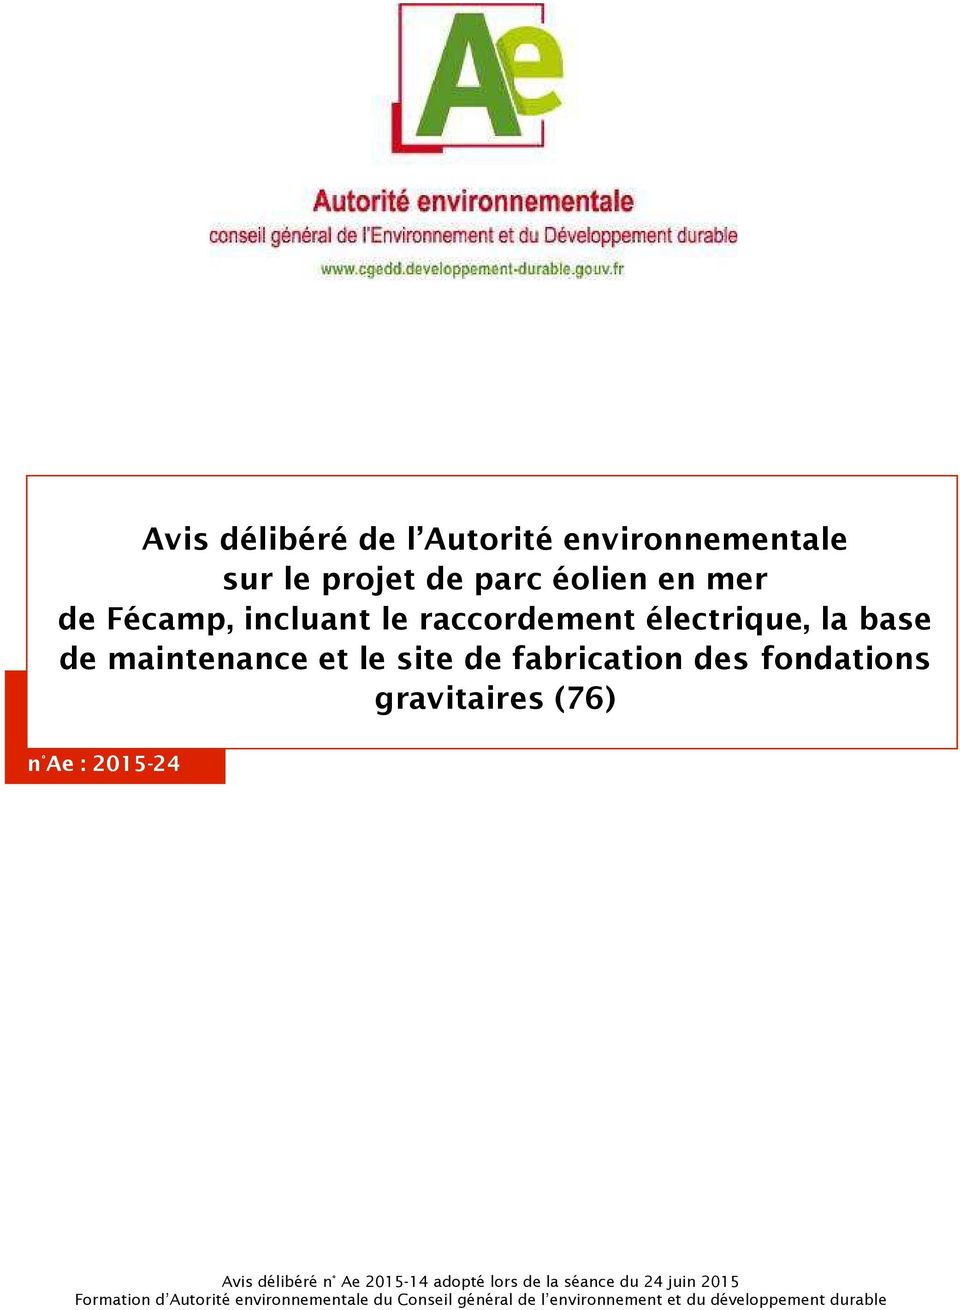 n Ae 2015-14 adopté lors de la séance du 24 juin 2015 Formation d Autorité environnementale du Conseil général de l